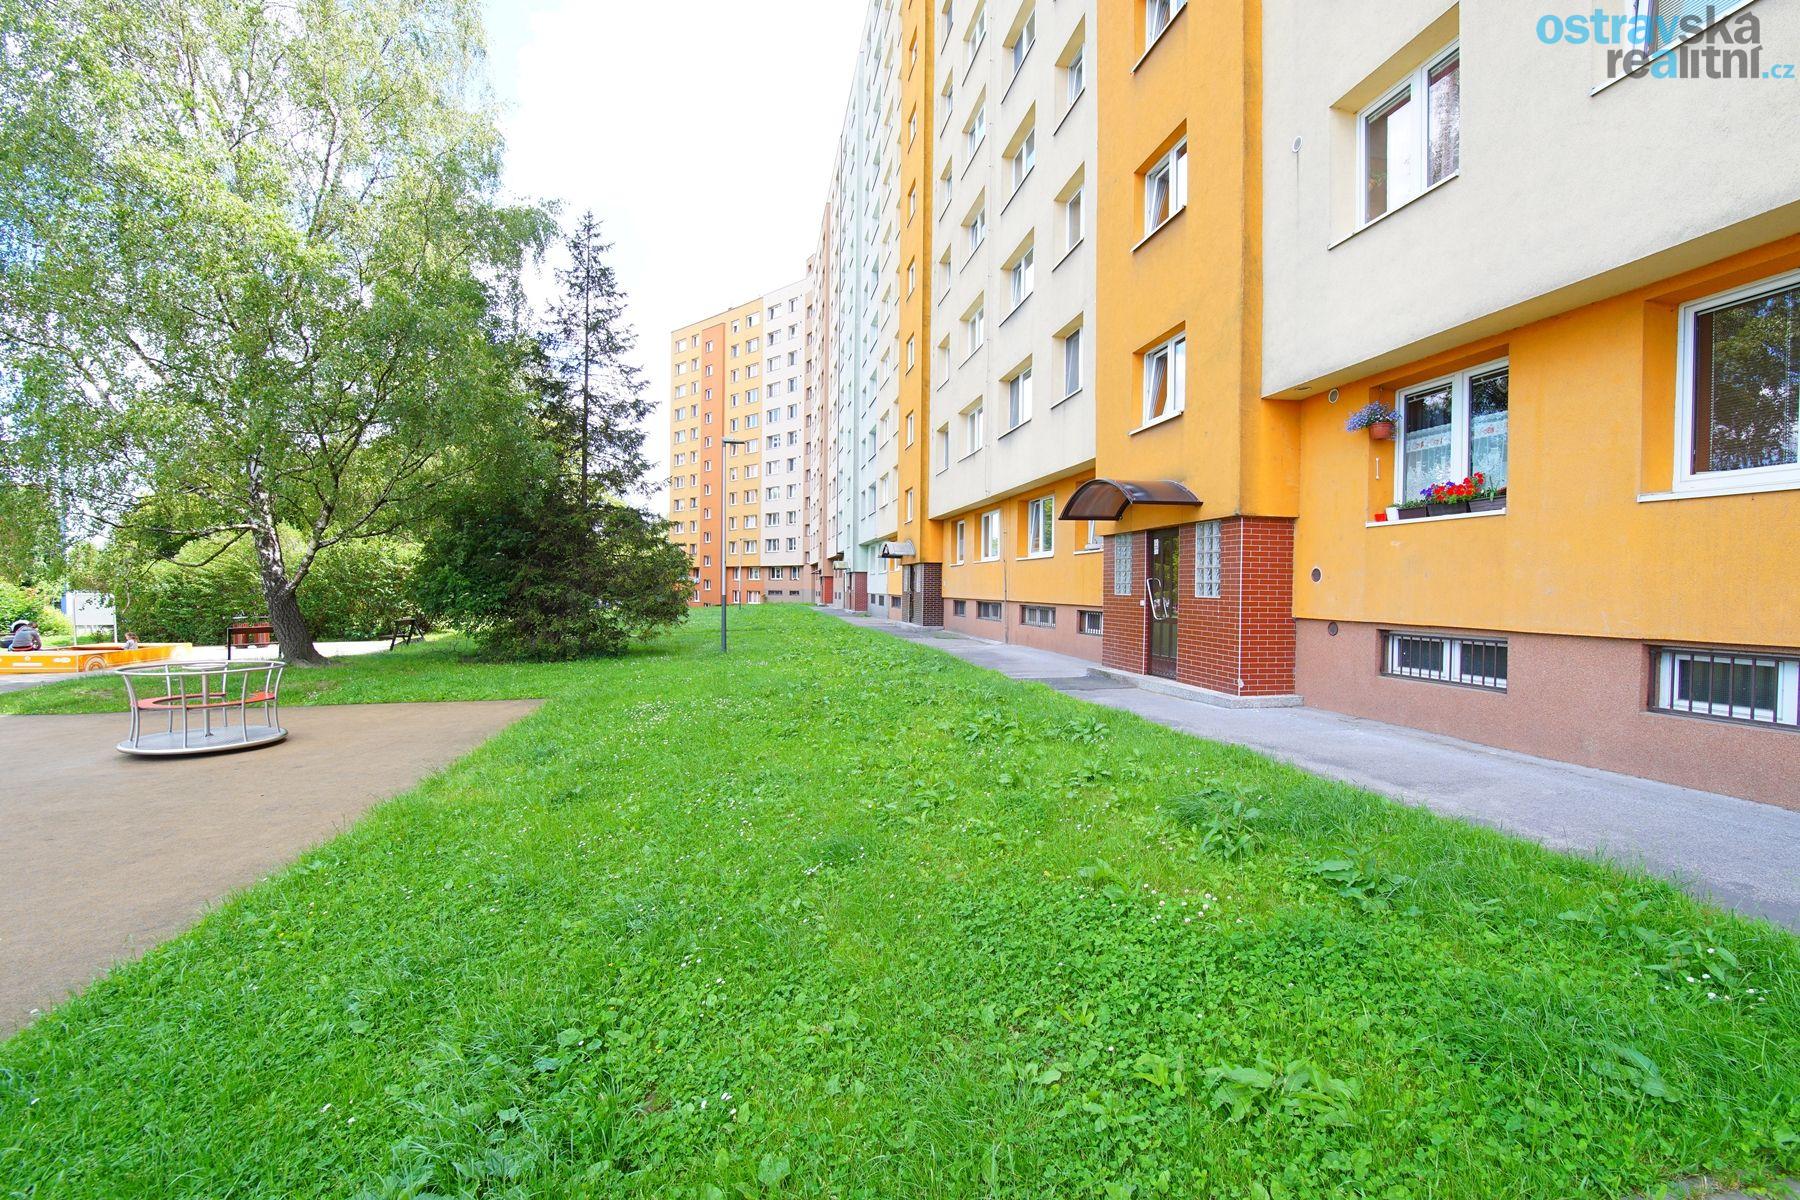 Prodej, byt 3+1, Ostrava - Výškovice, ul. Srbská, 75 m2, 2 x balkon